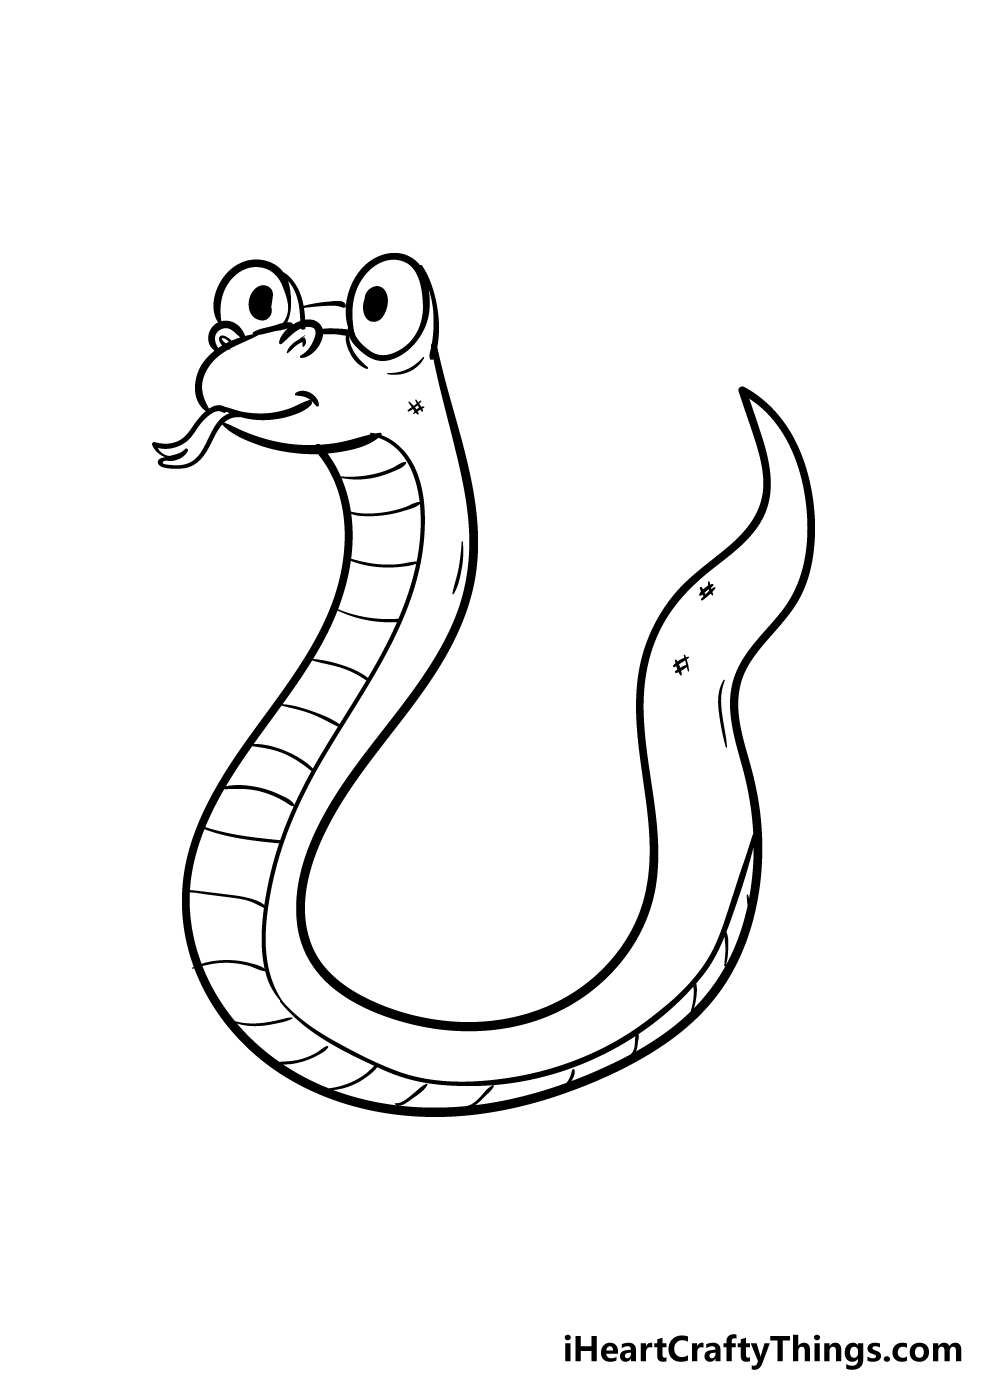 Xem hơn 100 ảnh về hình vẽ con rắn  NEC